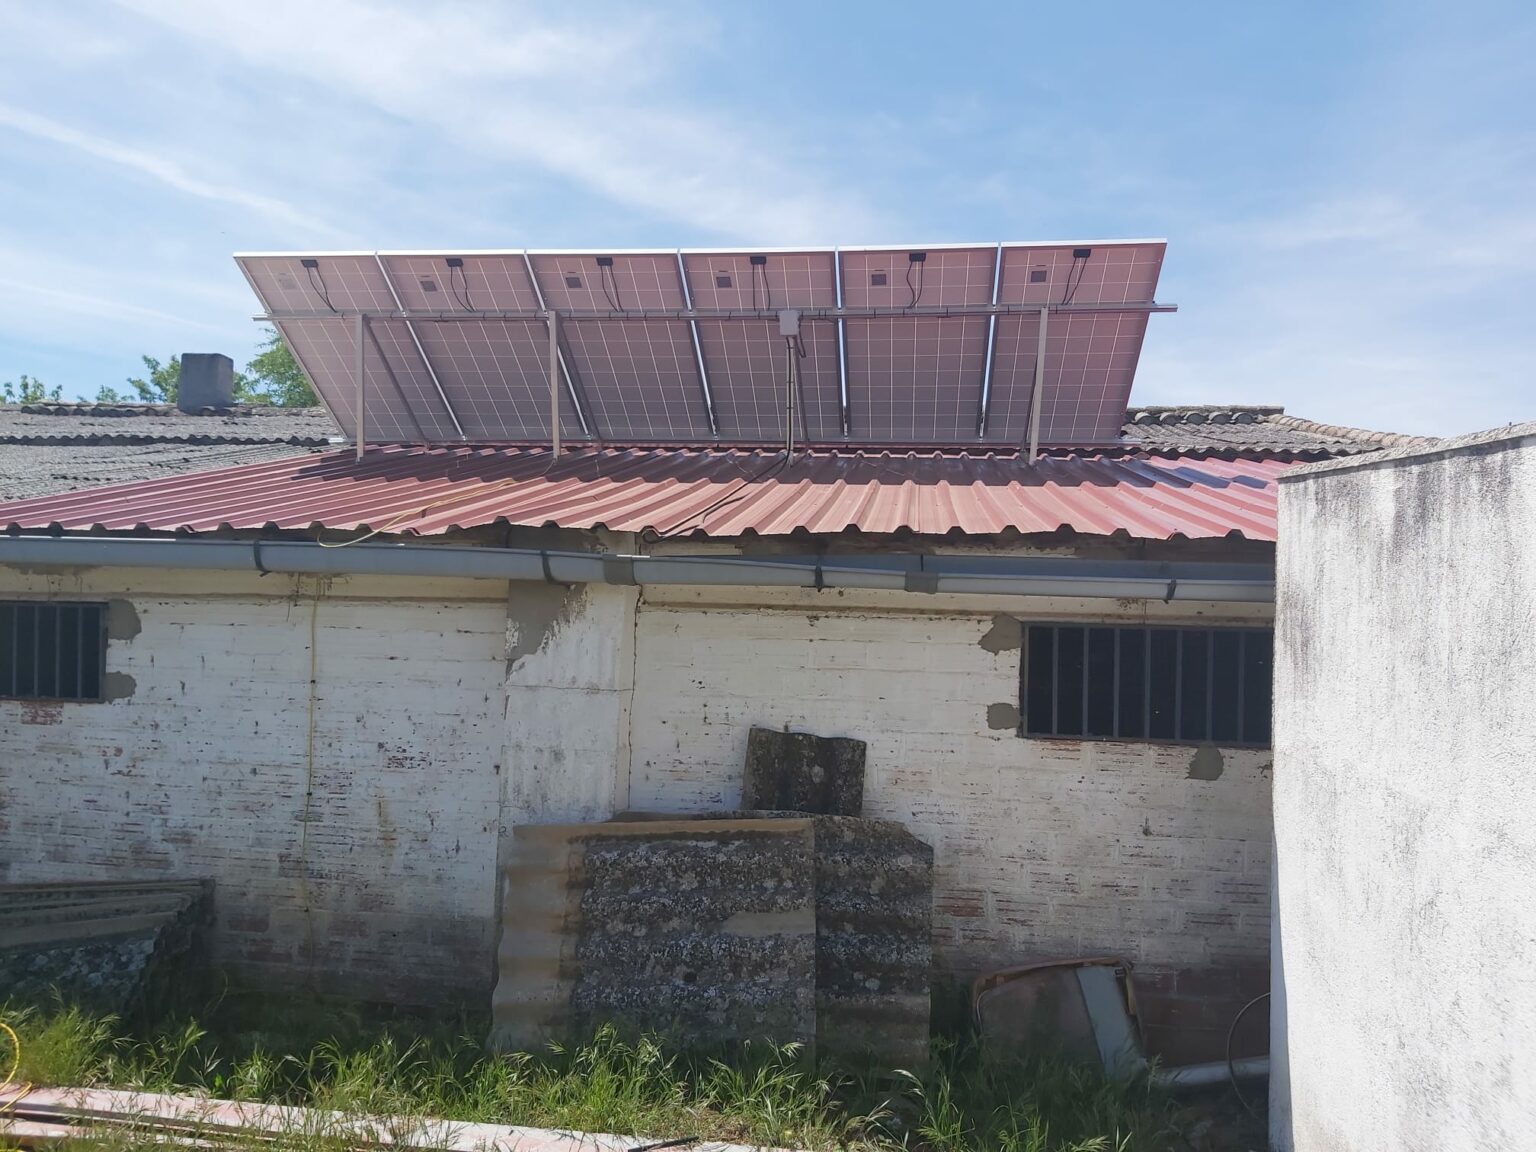 Placas solares en tejado de casa de campo.